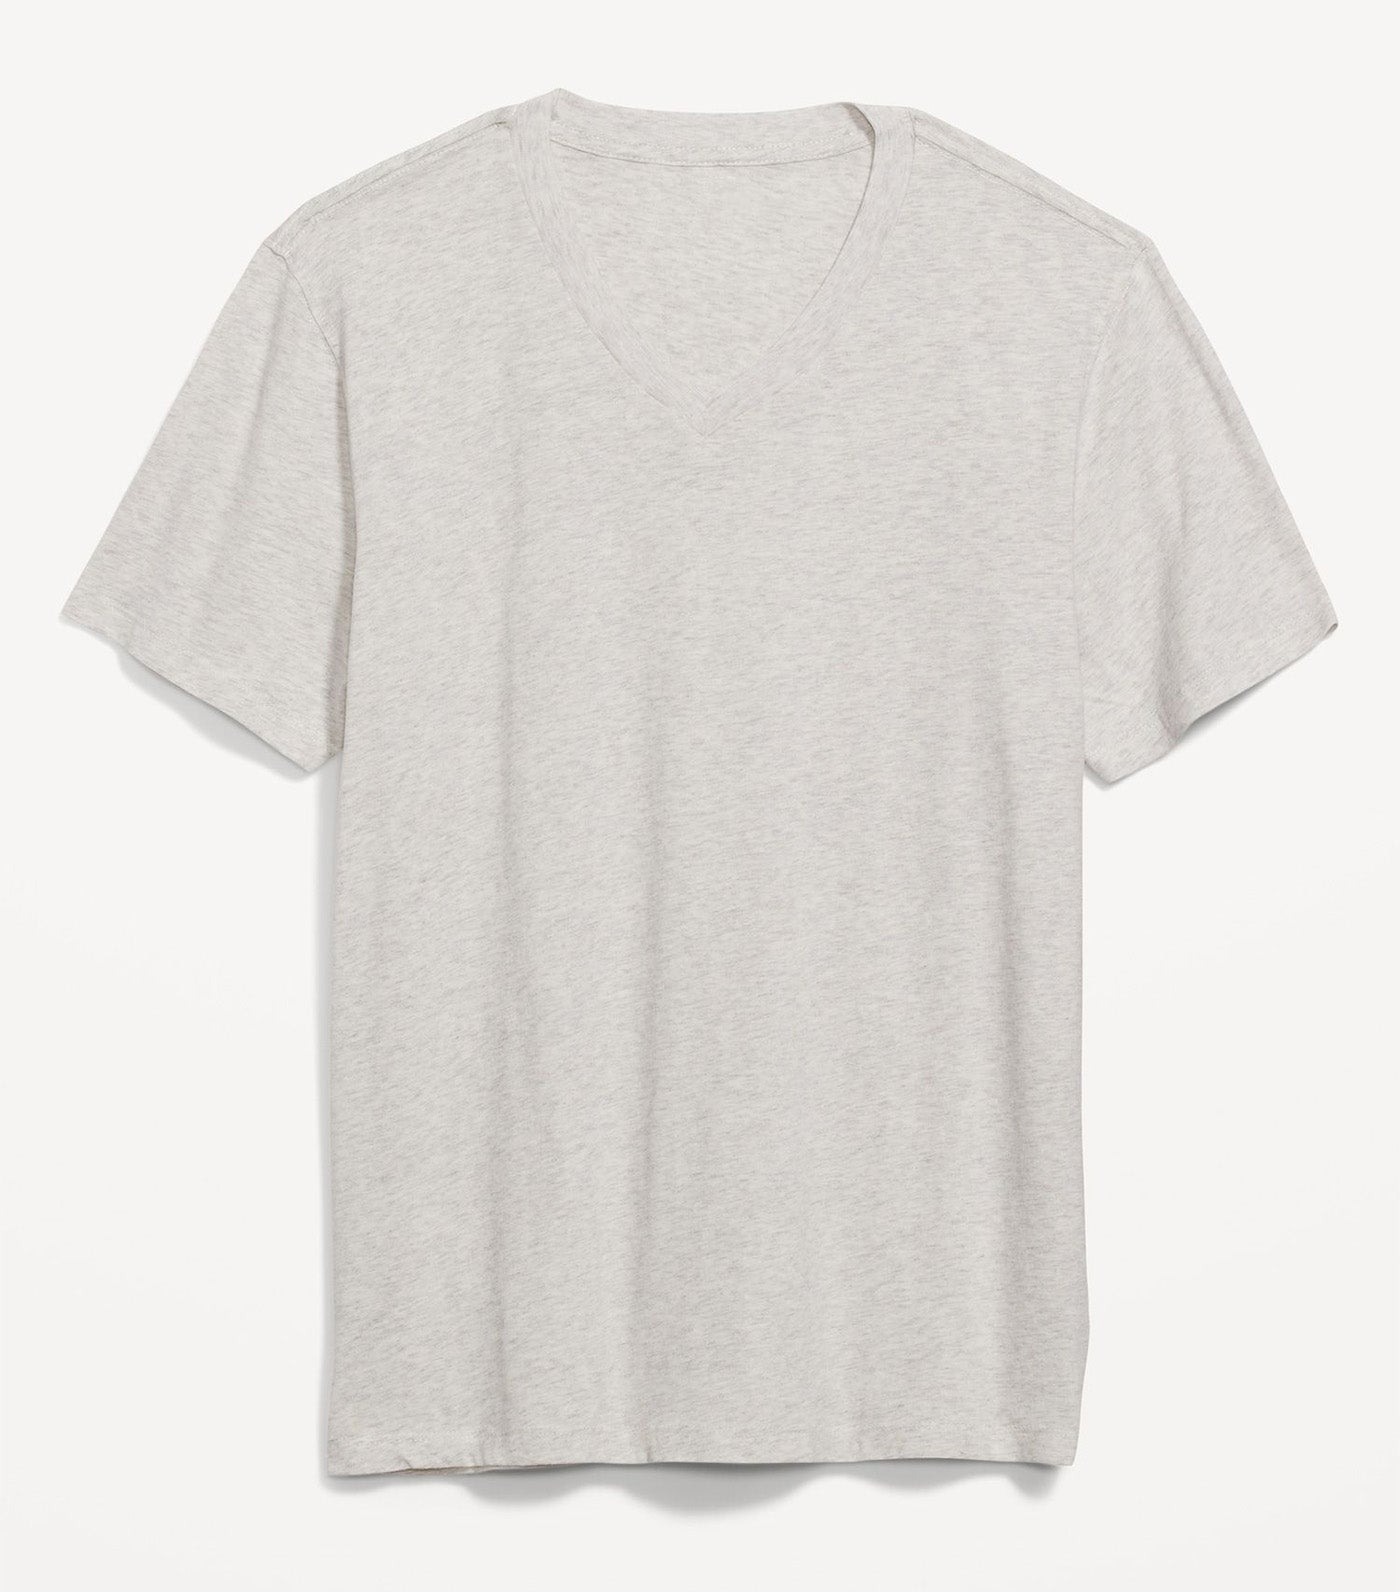 Soft-Washed V-Neck T-Shirt for Men Oatmeal Heather